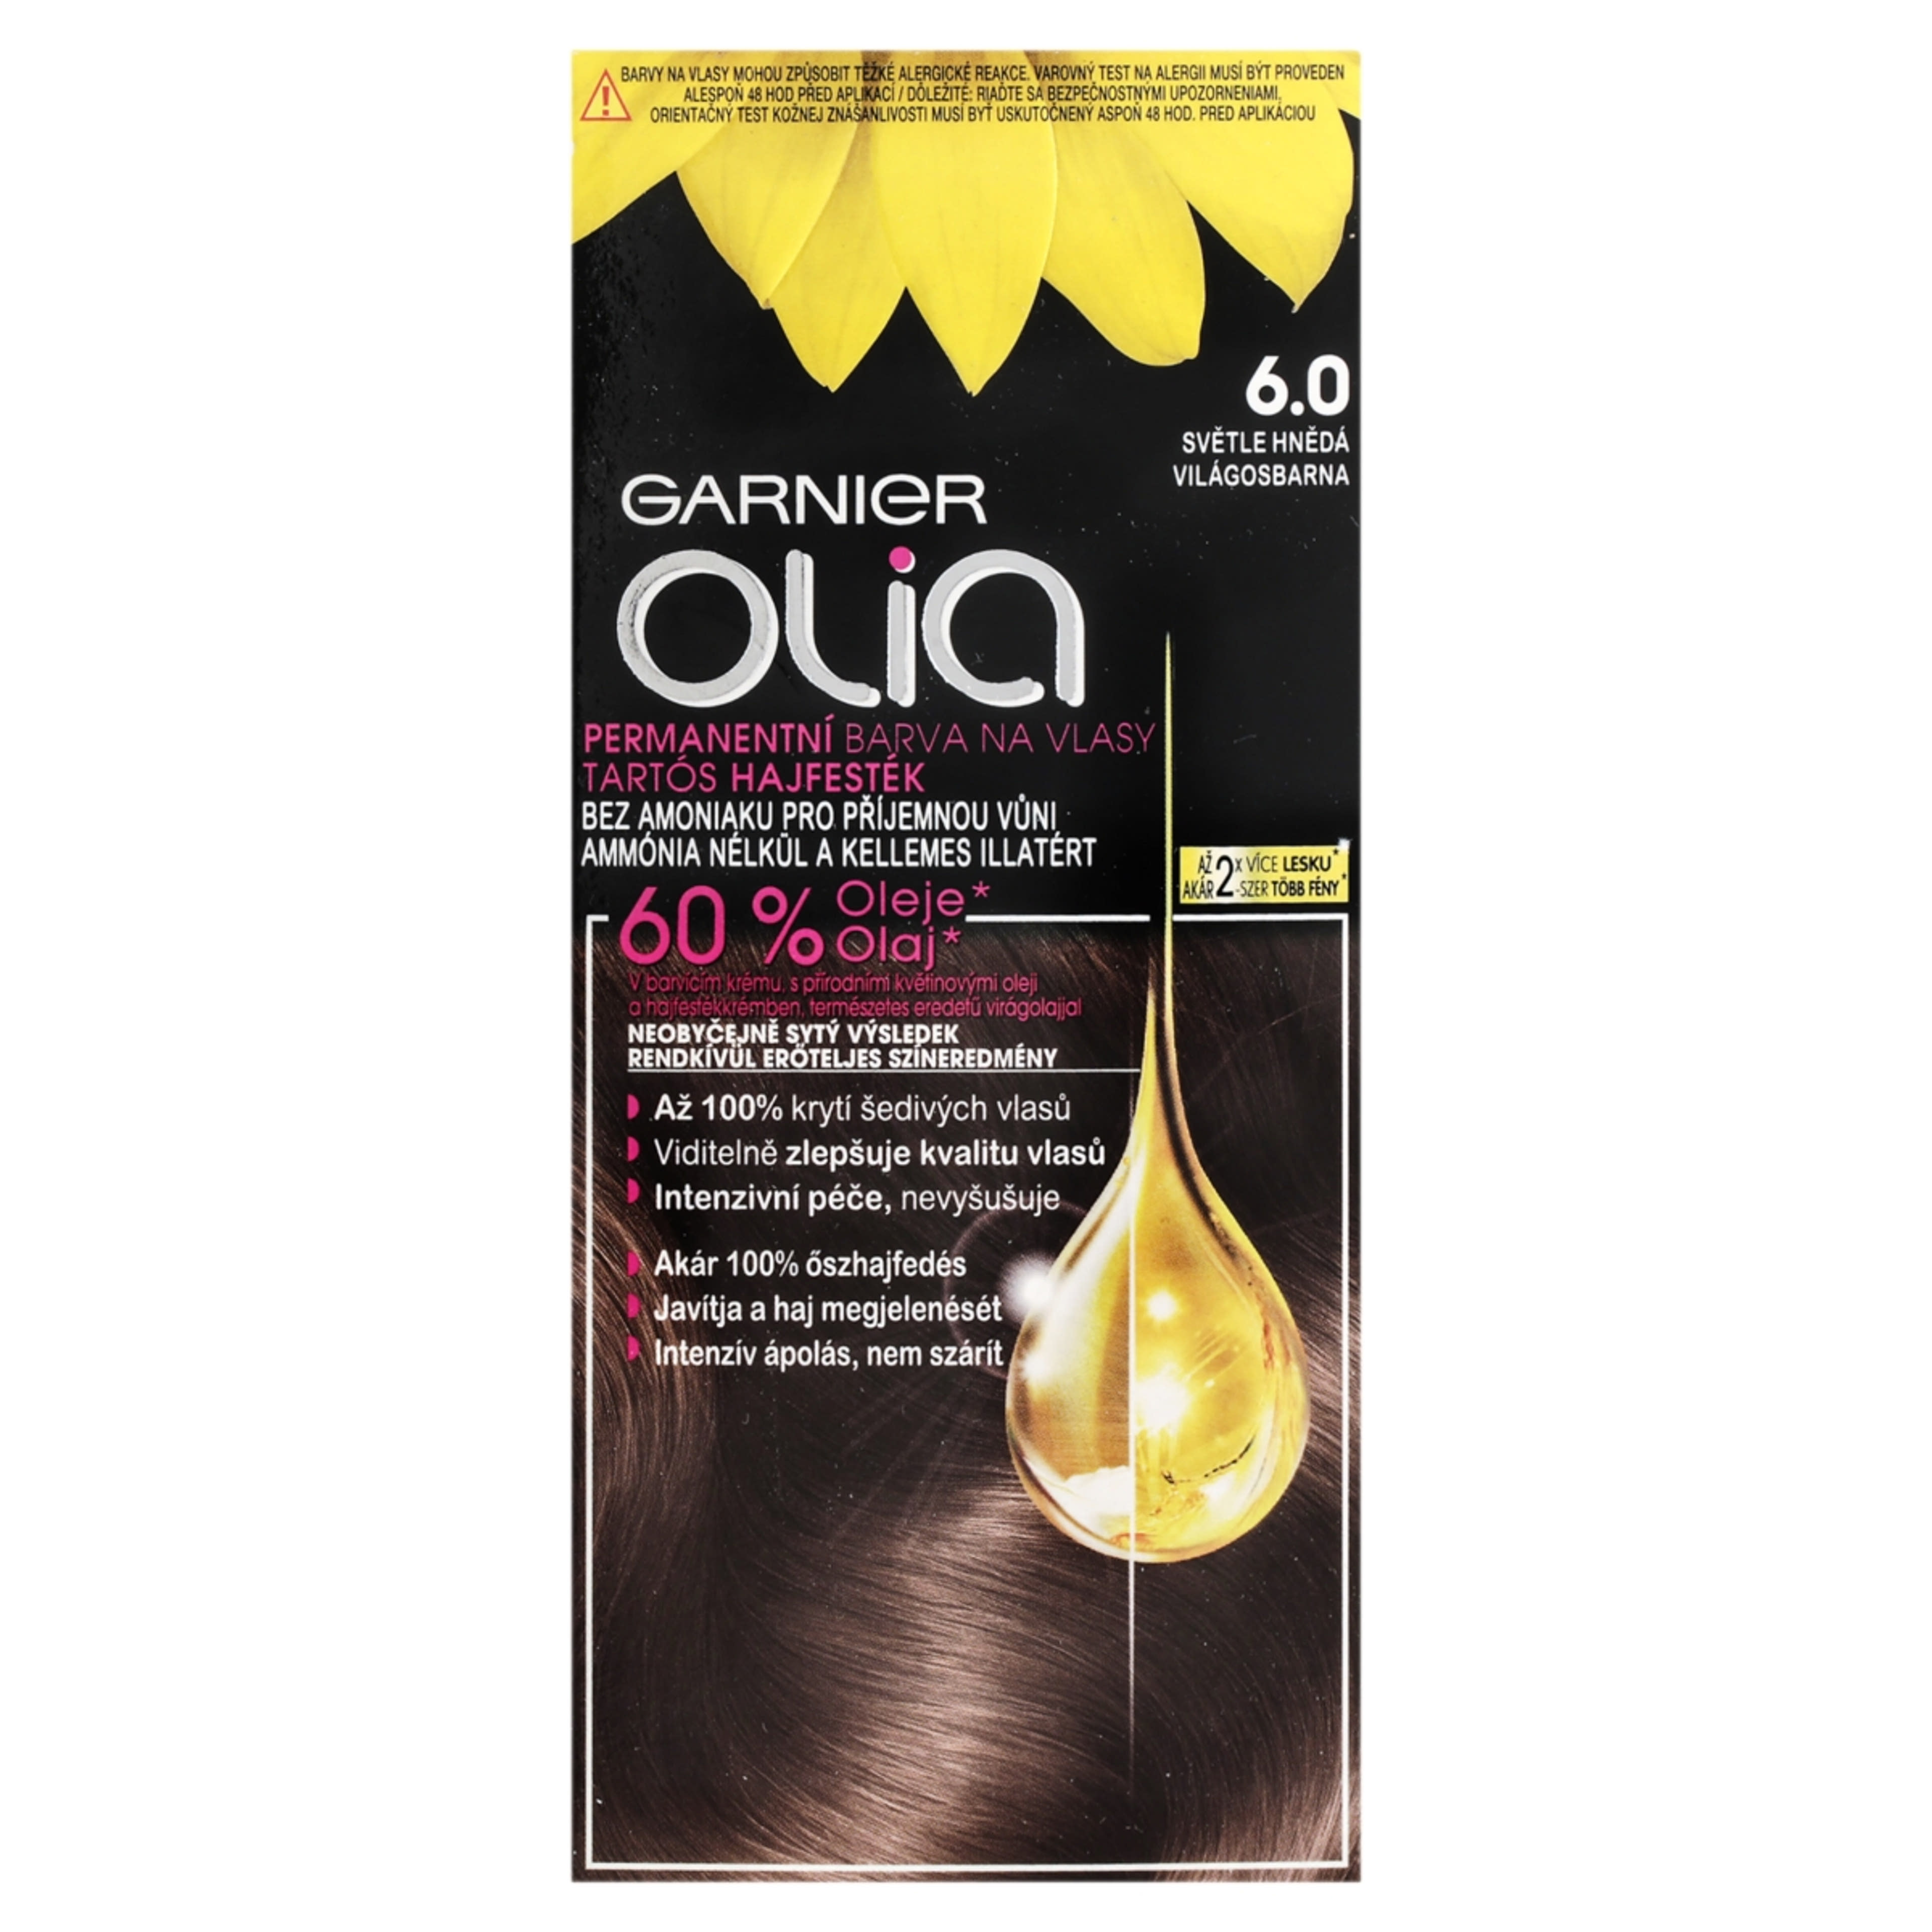 Garnier Olia tartós hajfesték 6.0 Világosbarna - 1 db